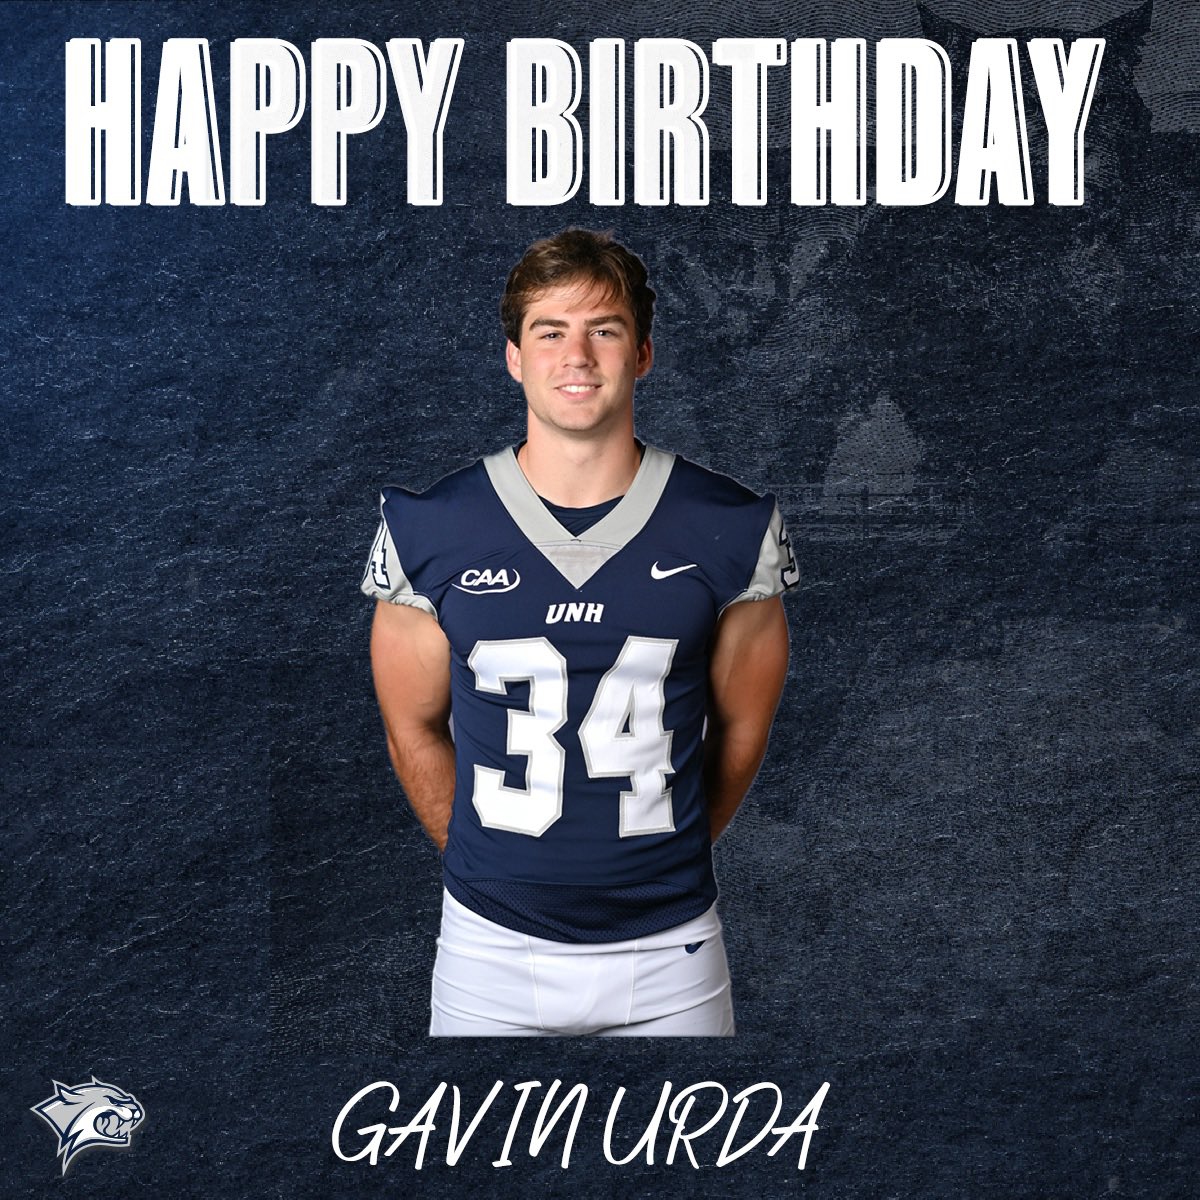 Happy birthday @GavinUrda